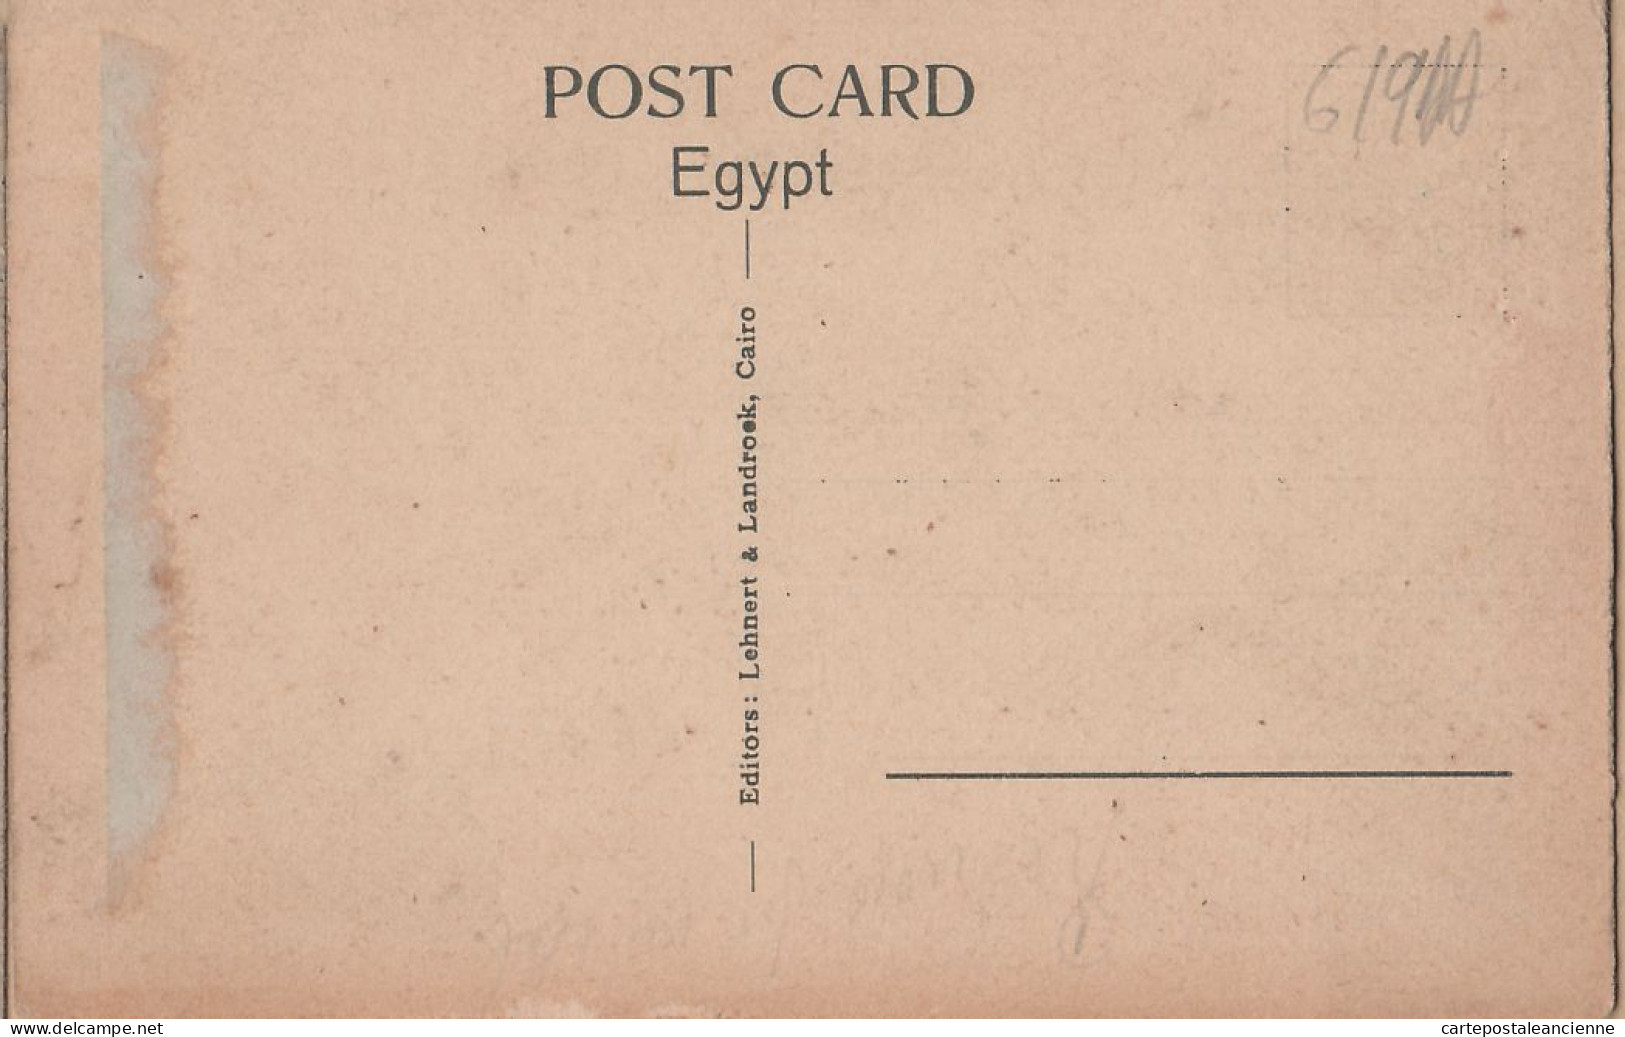 01833 / Egypt CAIRO In The Bazaars LE CAIRE Les Bazars 1920s - LEHNERT LANDROCK 1117 Egypte Agypten Egipto Egitto - Cairo